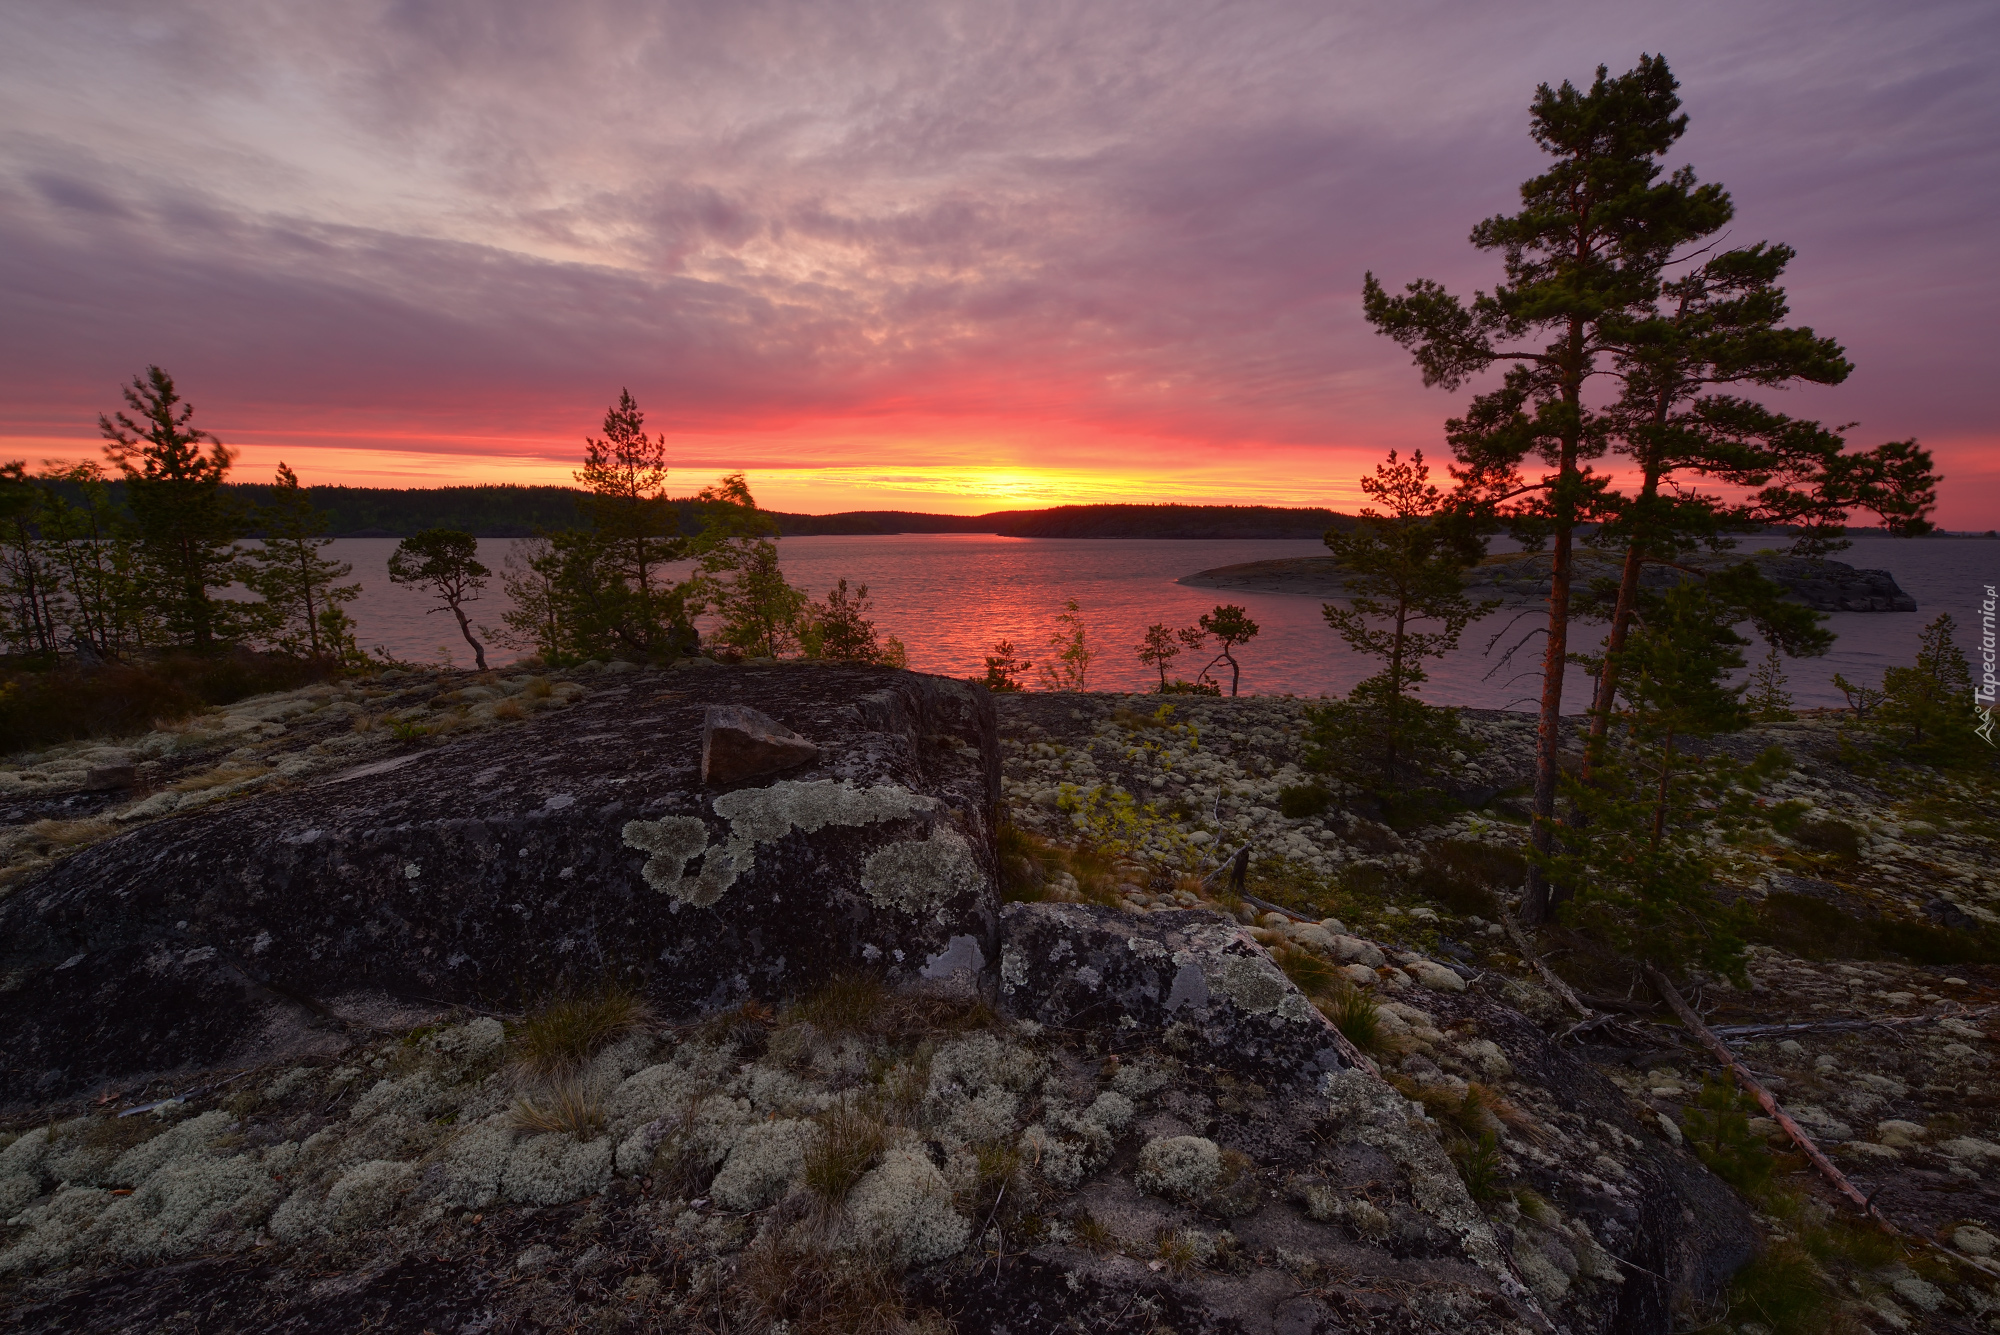 Jezioro Ładoga, Góry, Skały, Drzewa, Zachód słońca, Karelia, Rosja